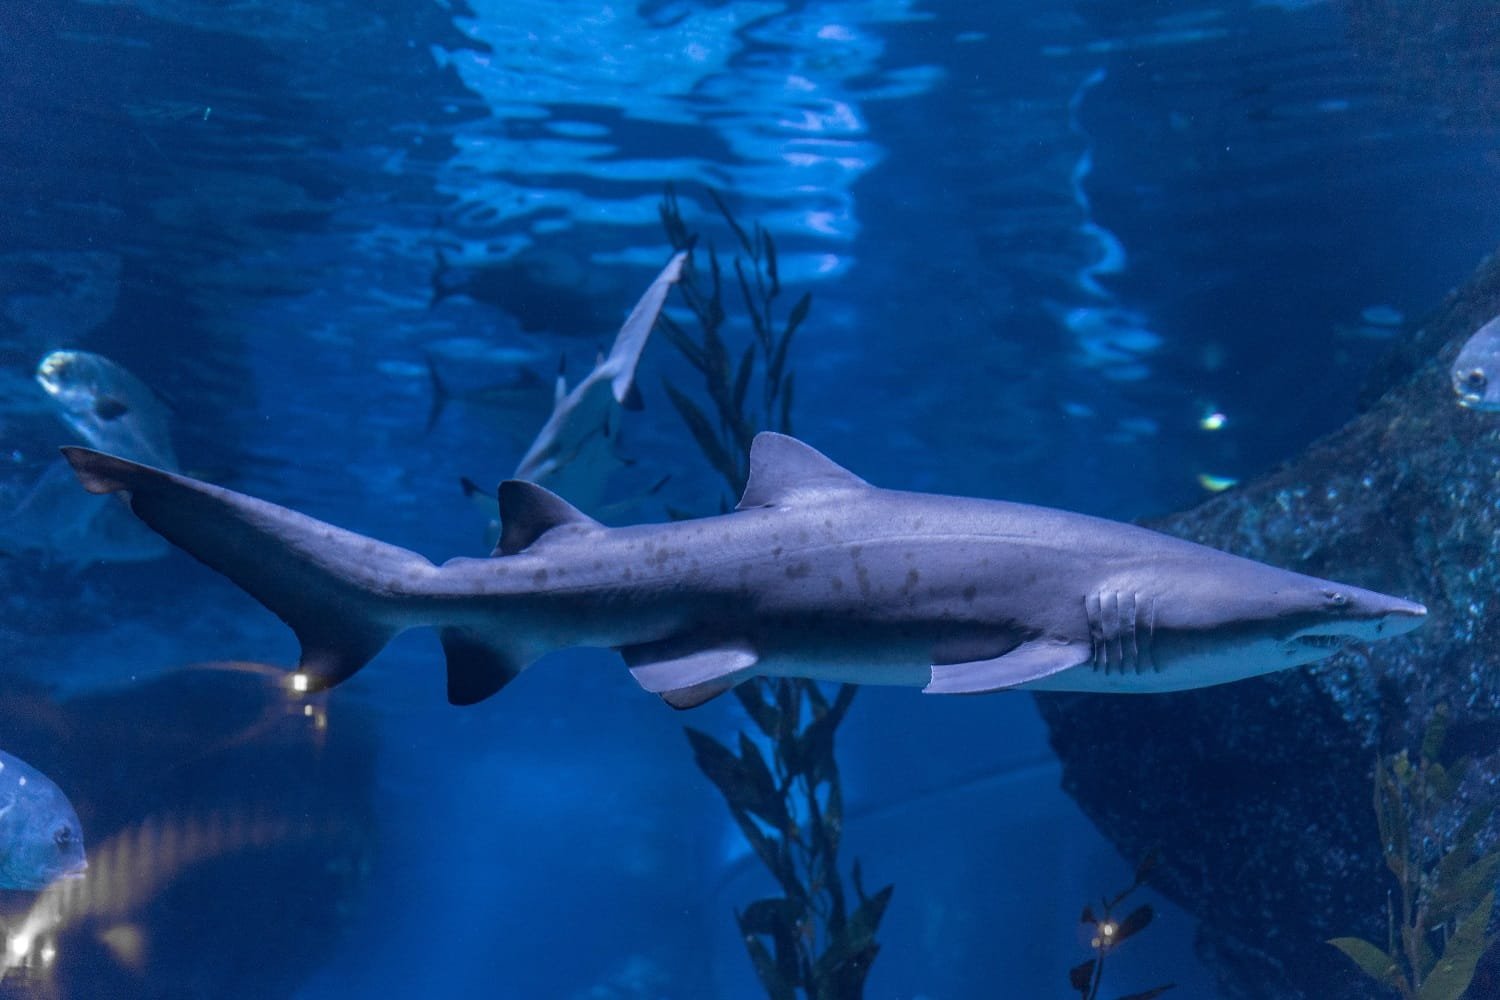 "ซีไลฟ์ แบงคอก" ชวนตื่นตากับ Shark Life’s Campaign ครั้งแรกในรอบ 10 ปี กับการนำเข้าฉลามใหม่ทั้ง 8 ตัว!